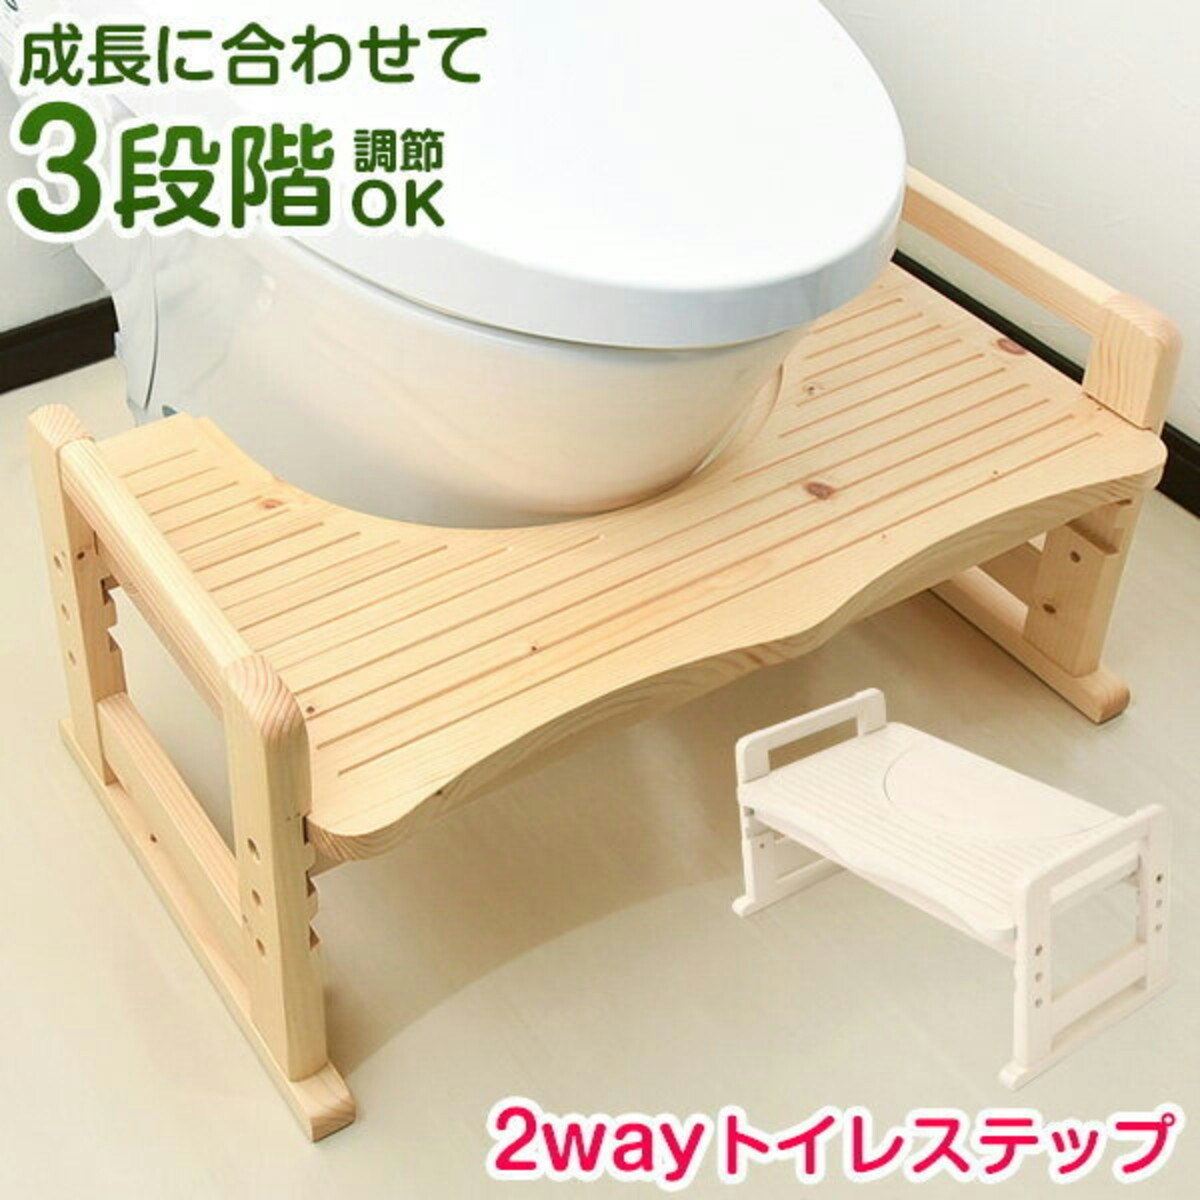 木製 トイレトレーニング ステップ台